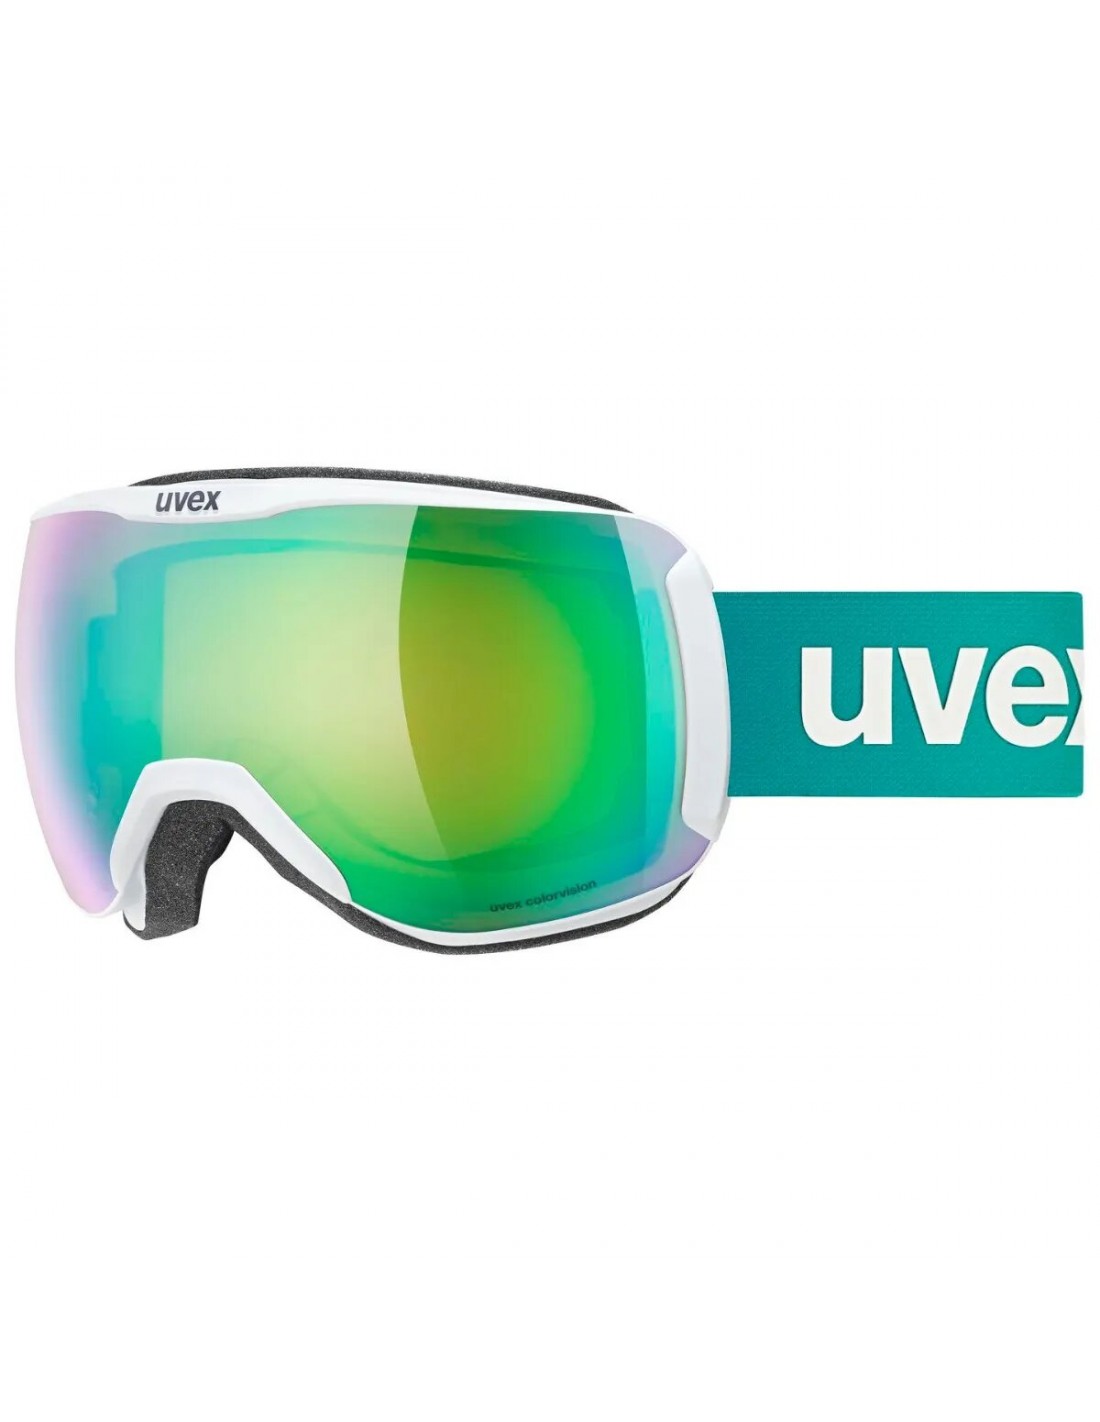 Uvex Skibrille Downhill 2100 CV, white matt, mirror green S2 colorvision green von Uvex